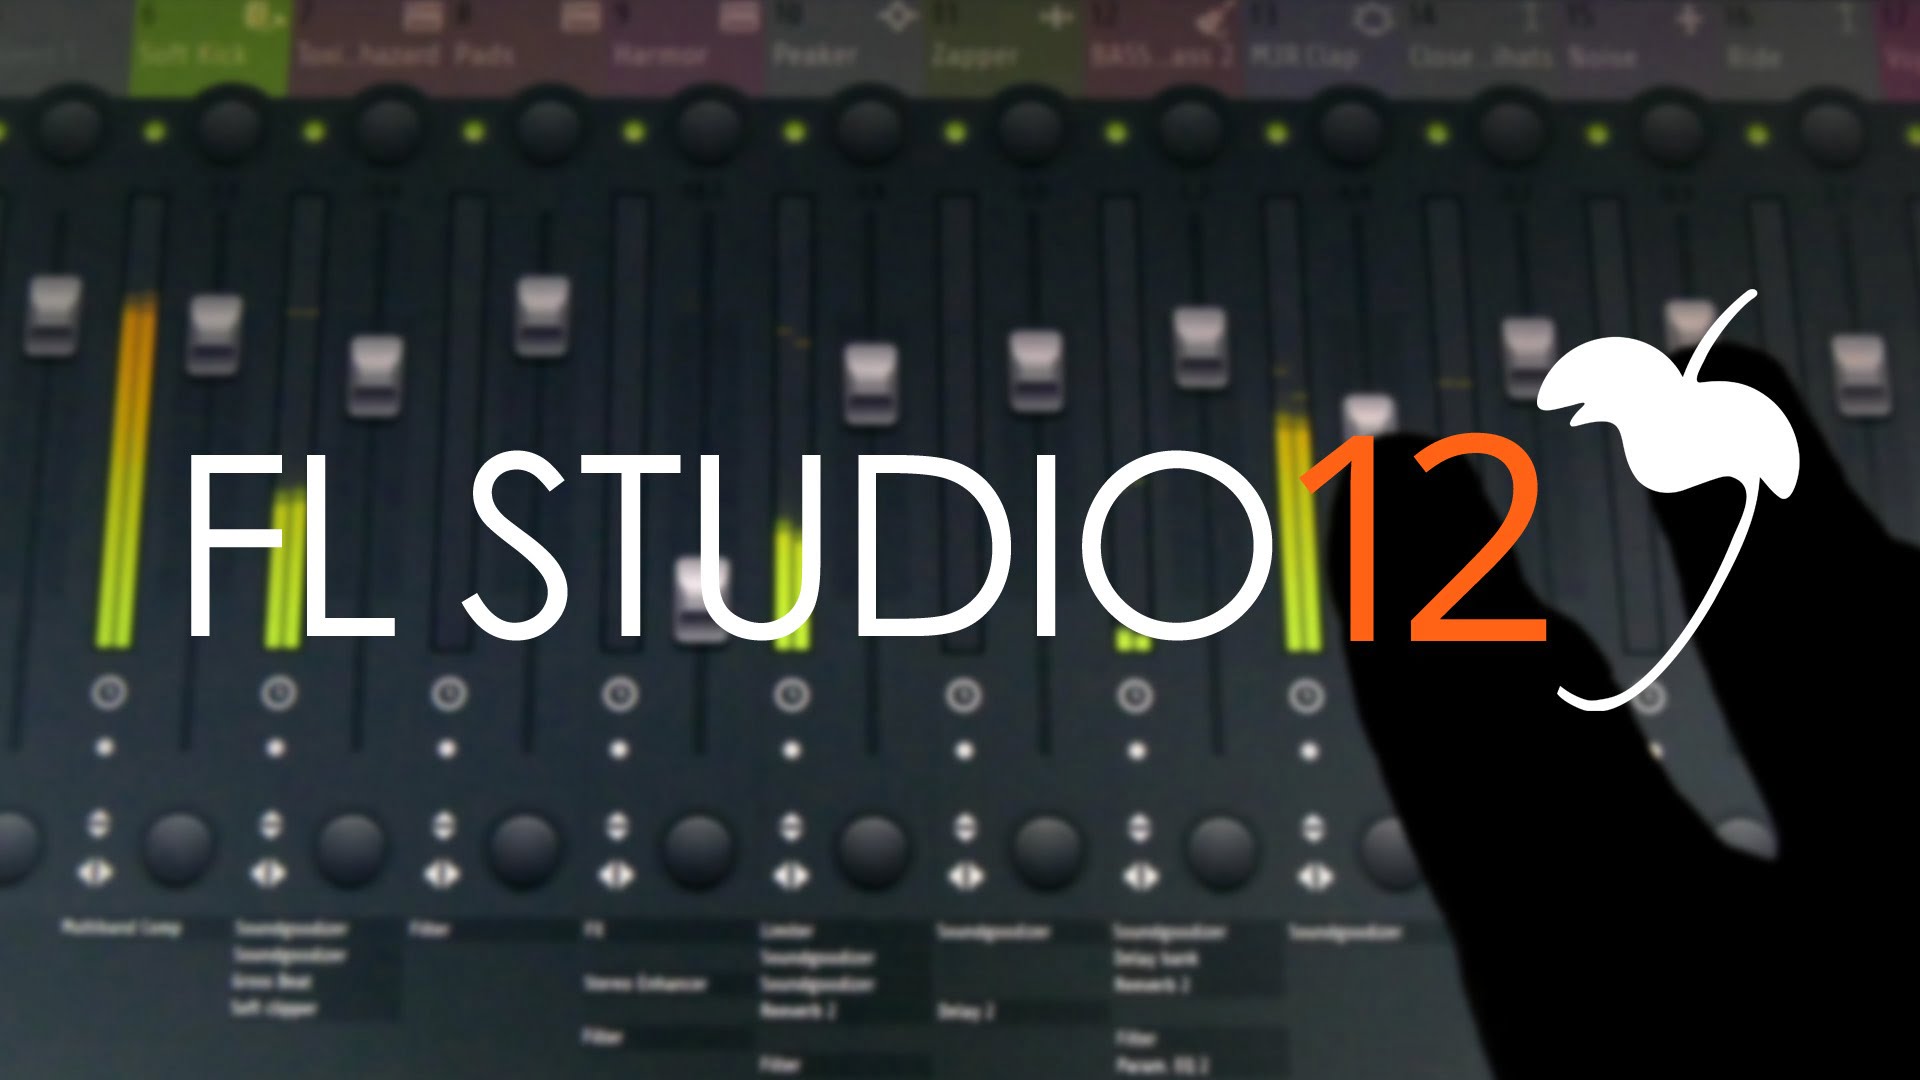 fl studio 12 producer edition mac